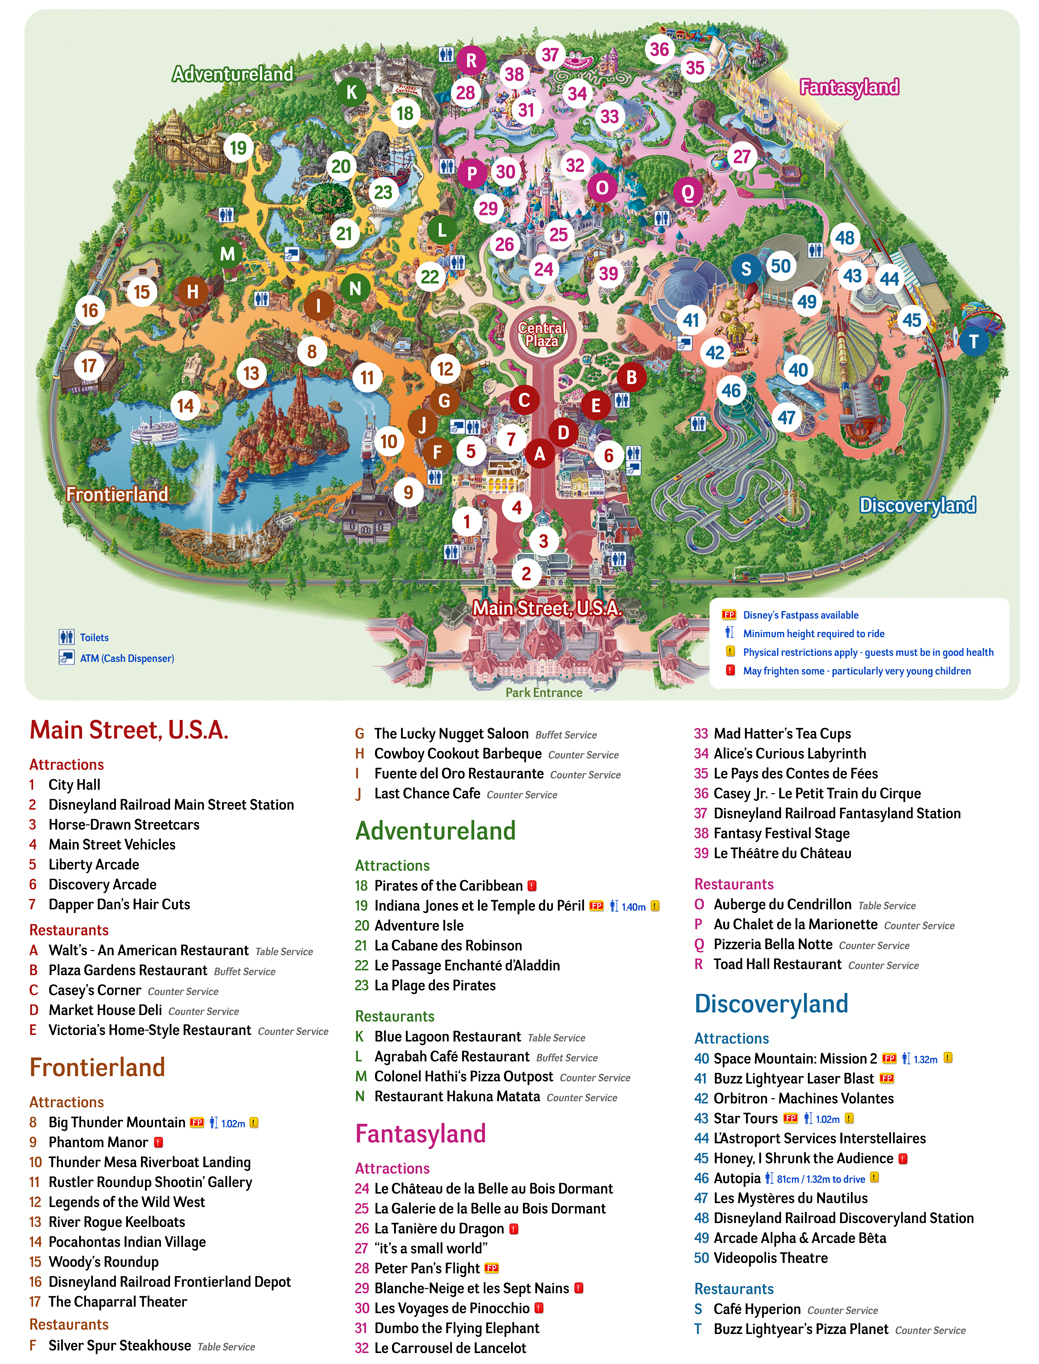 stadtplan-von-disneyland-paris-detaillierte-gedruckte-karten-von